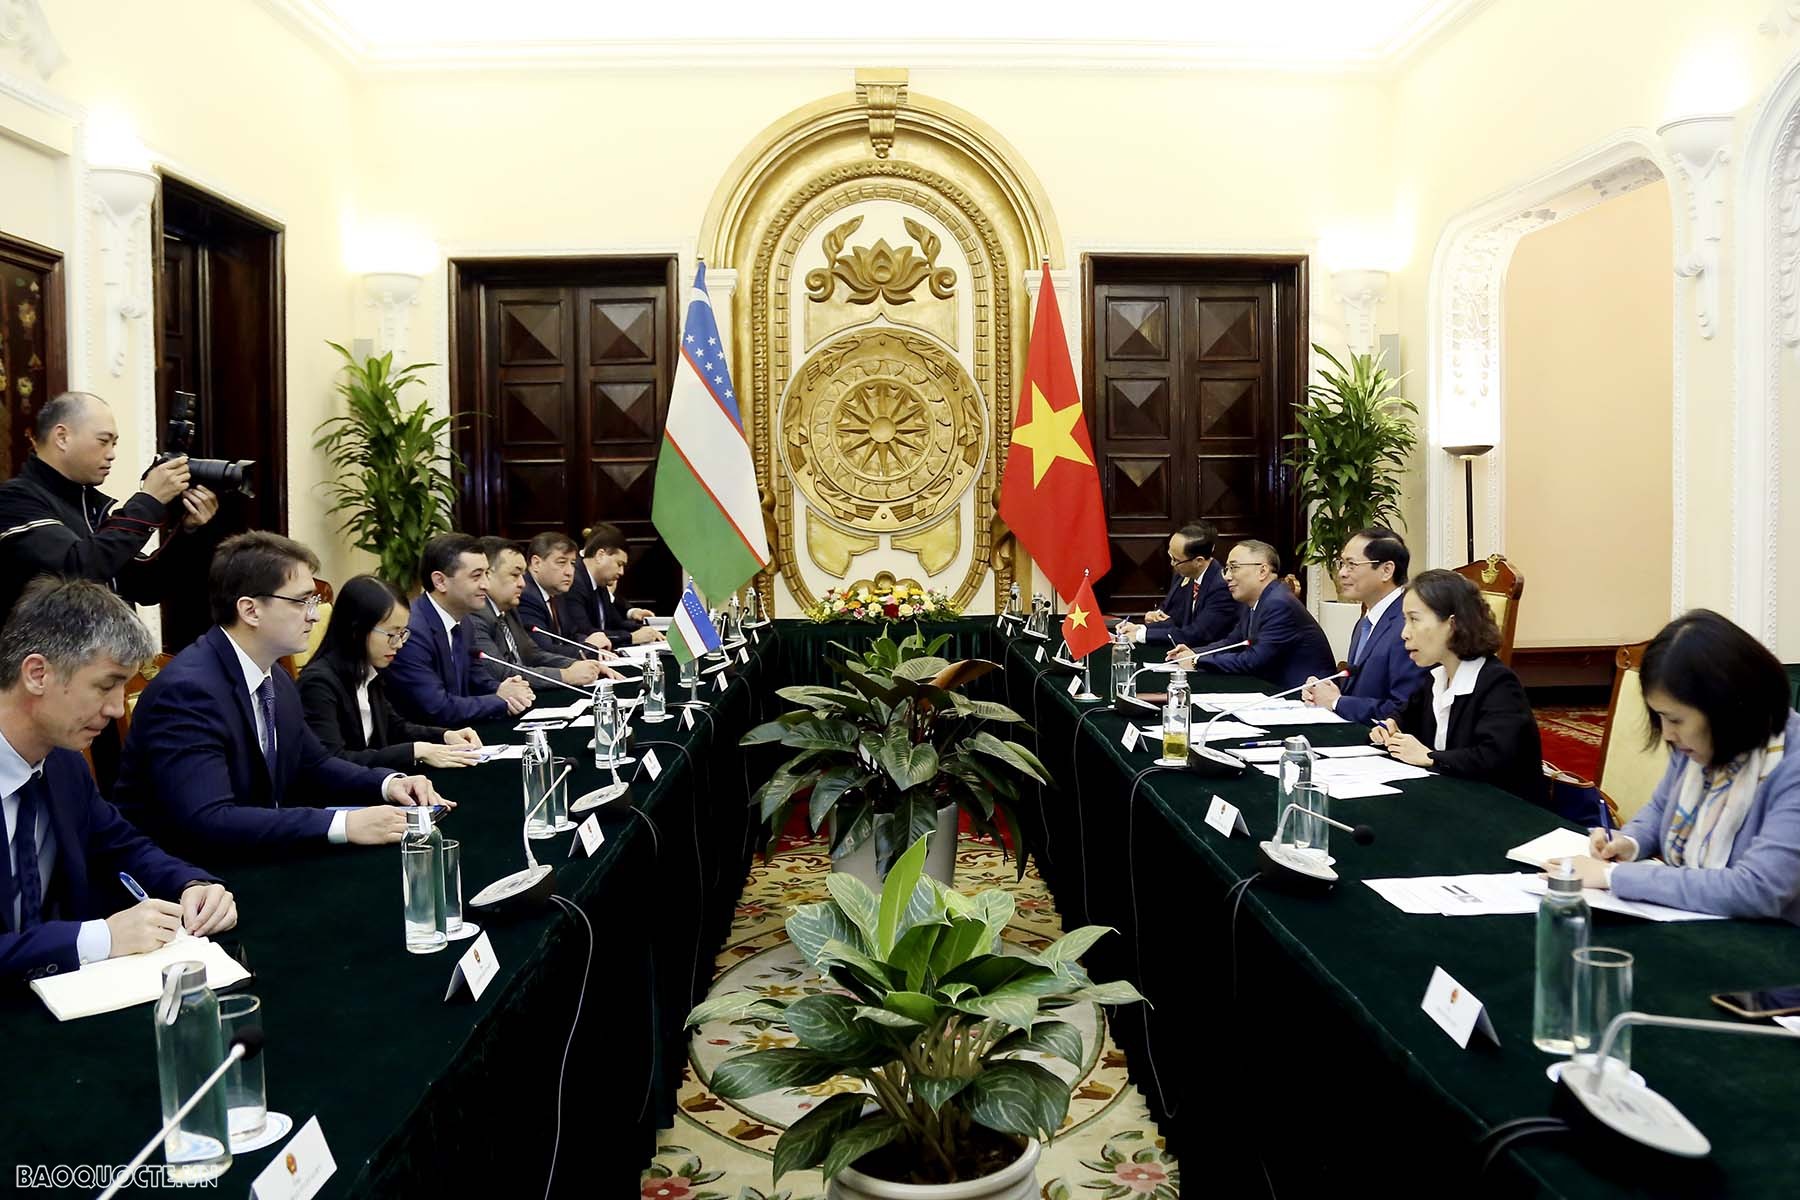 Vietnam, Uzbekistan Foreign Ministers hold talks in Hanoi